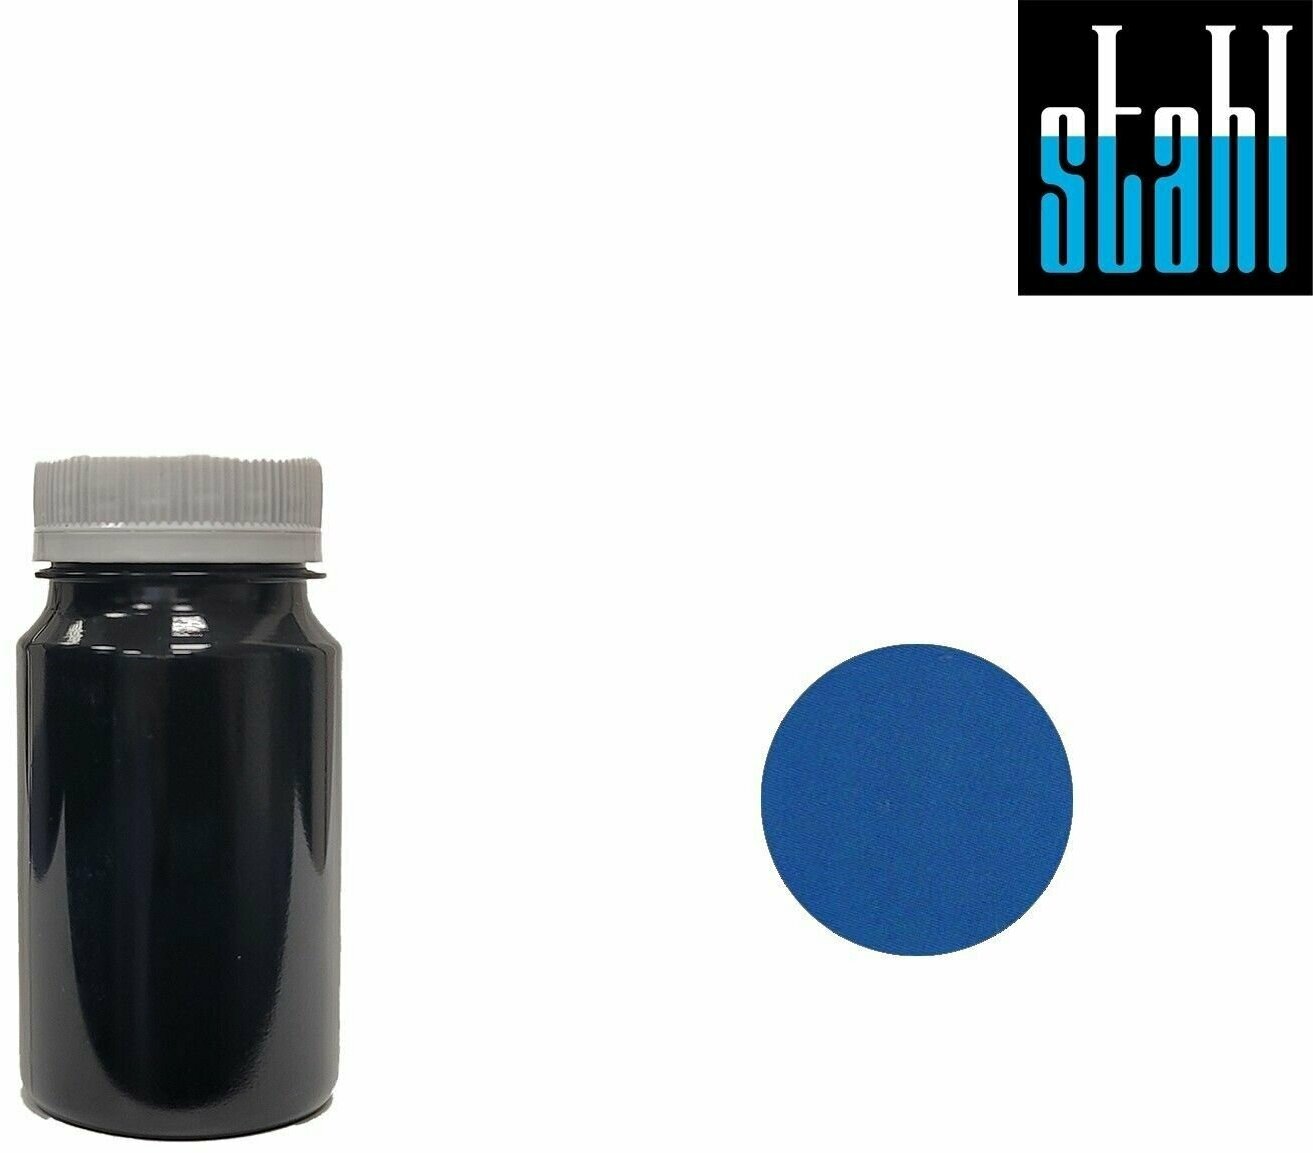 Краска Easy crust "Stahl" краска на водной основе, Синий, 100 мл